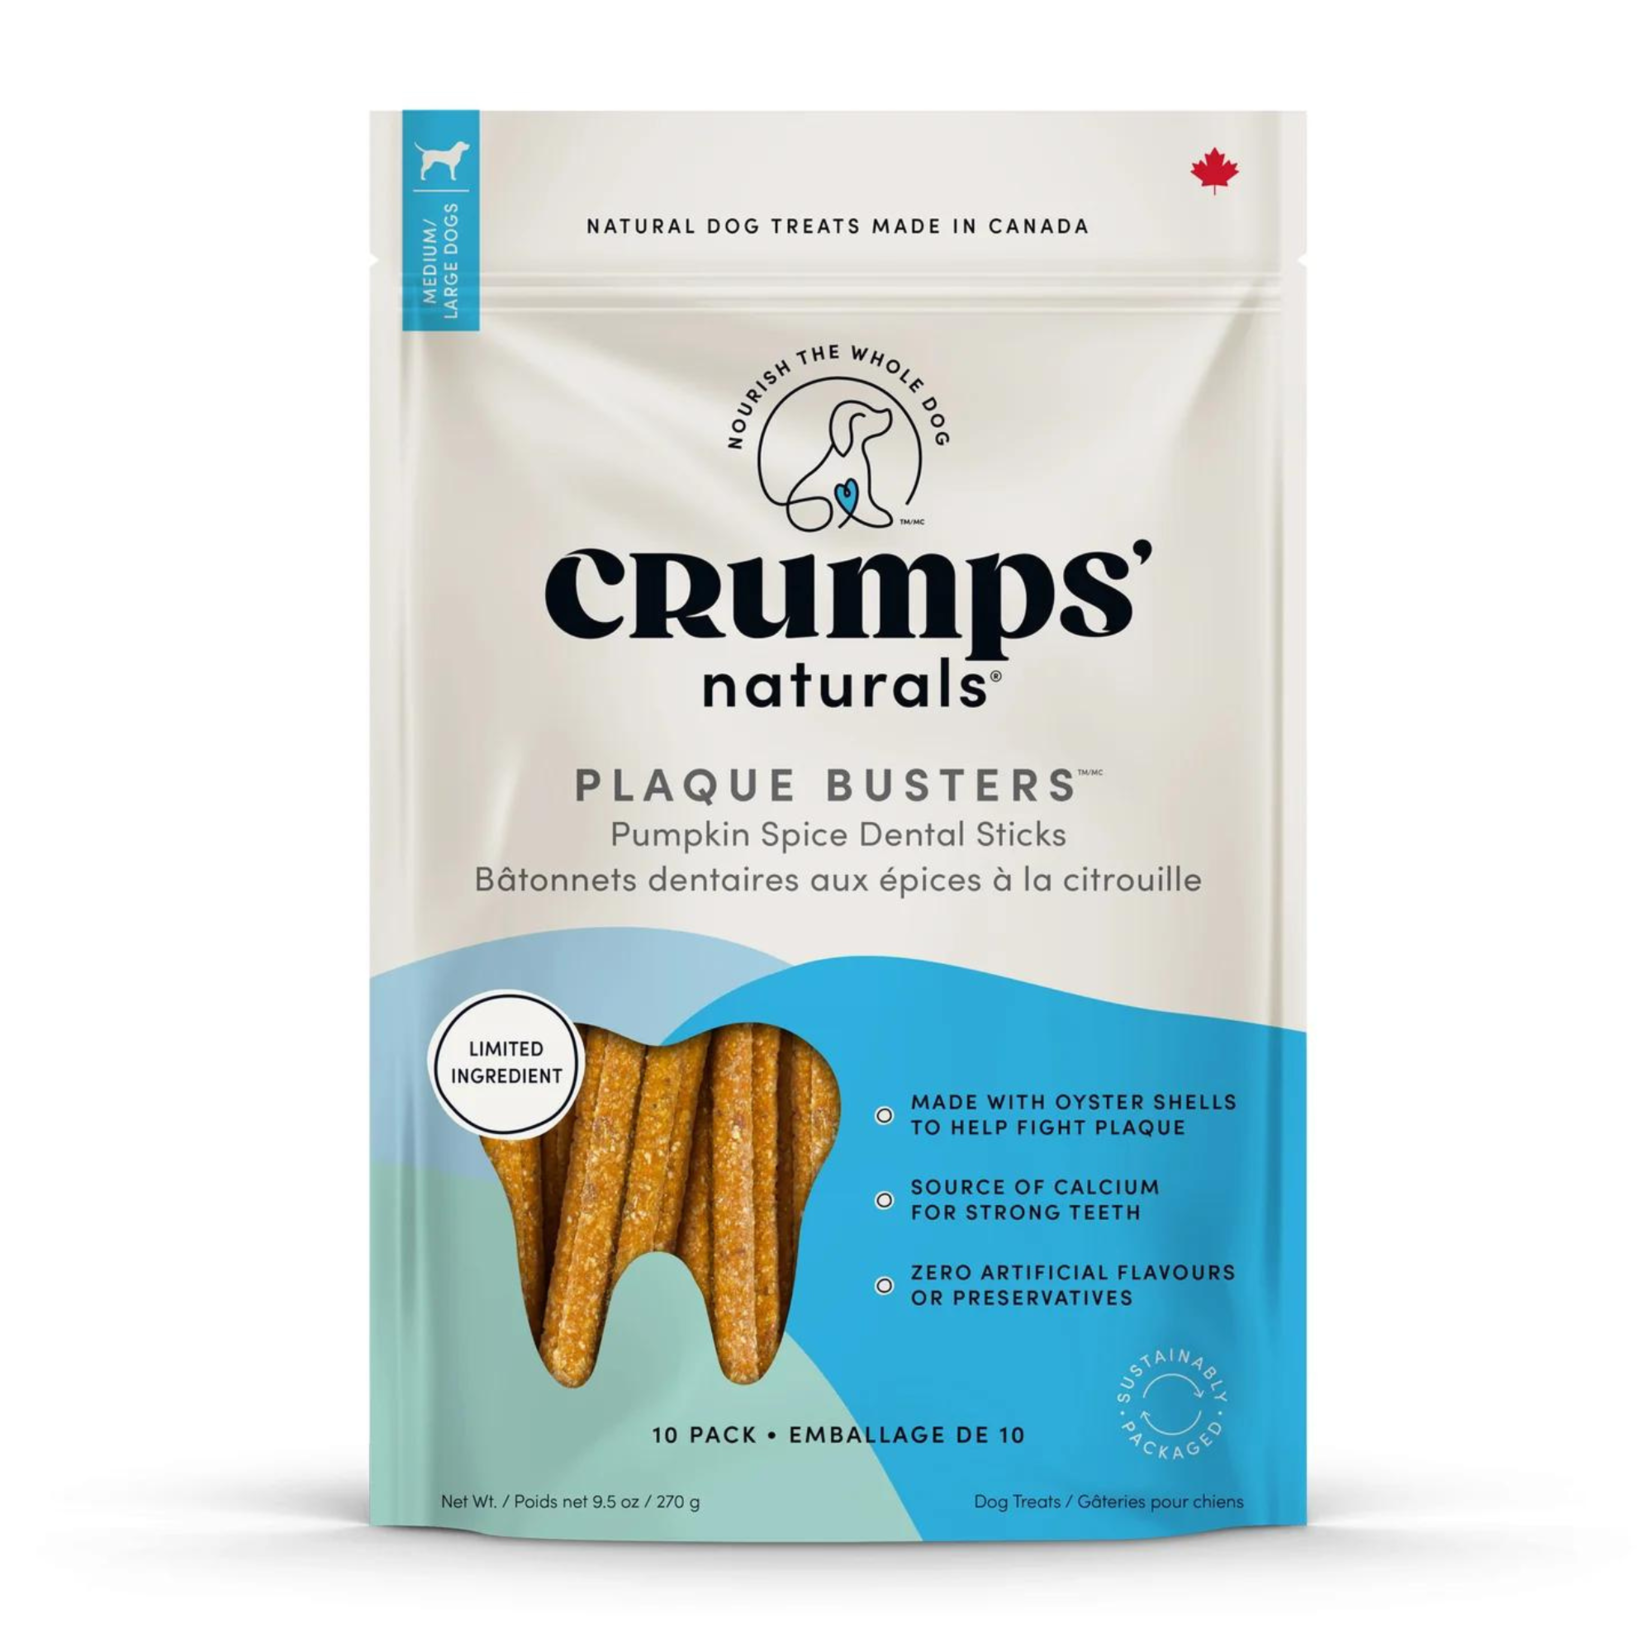 Crumps' Naturals Crumps' Naturals: Plaque Busters: Pumpkin Spice Dental Sticks 10pc